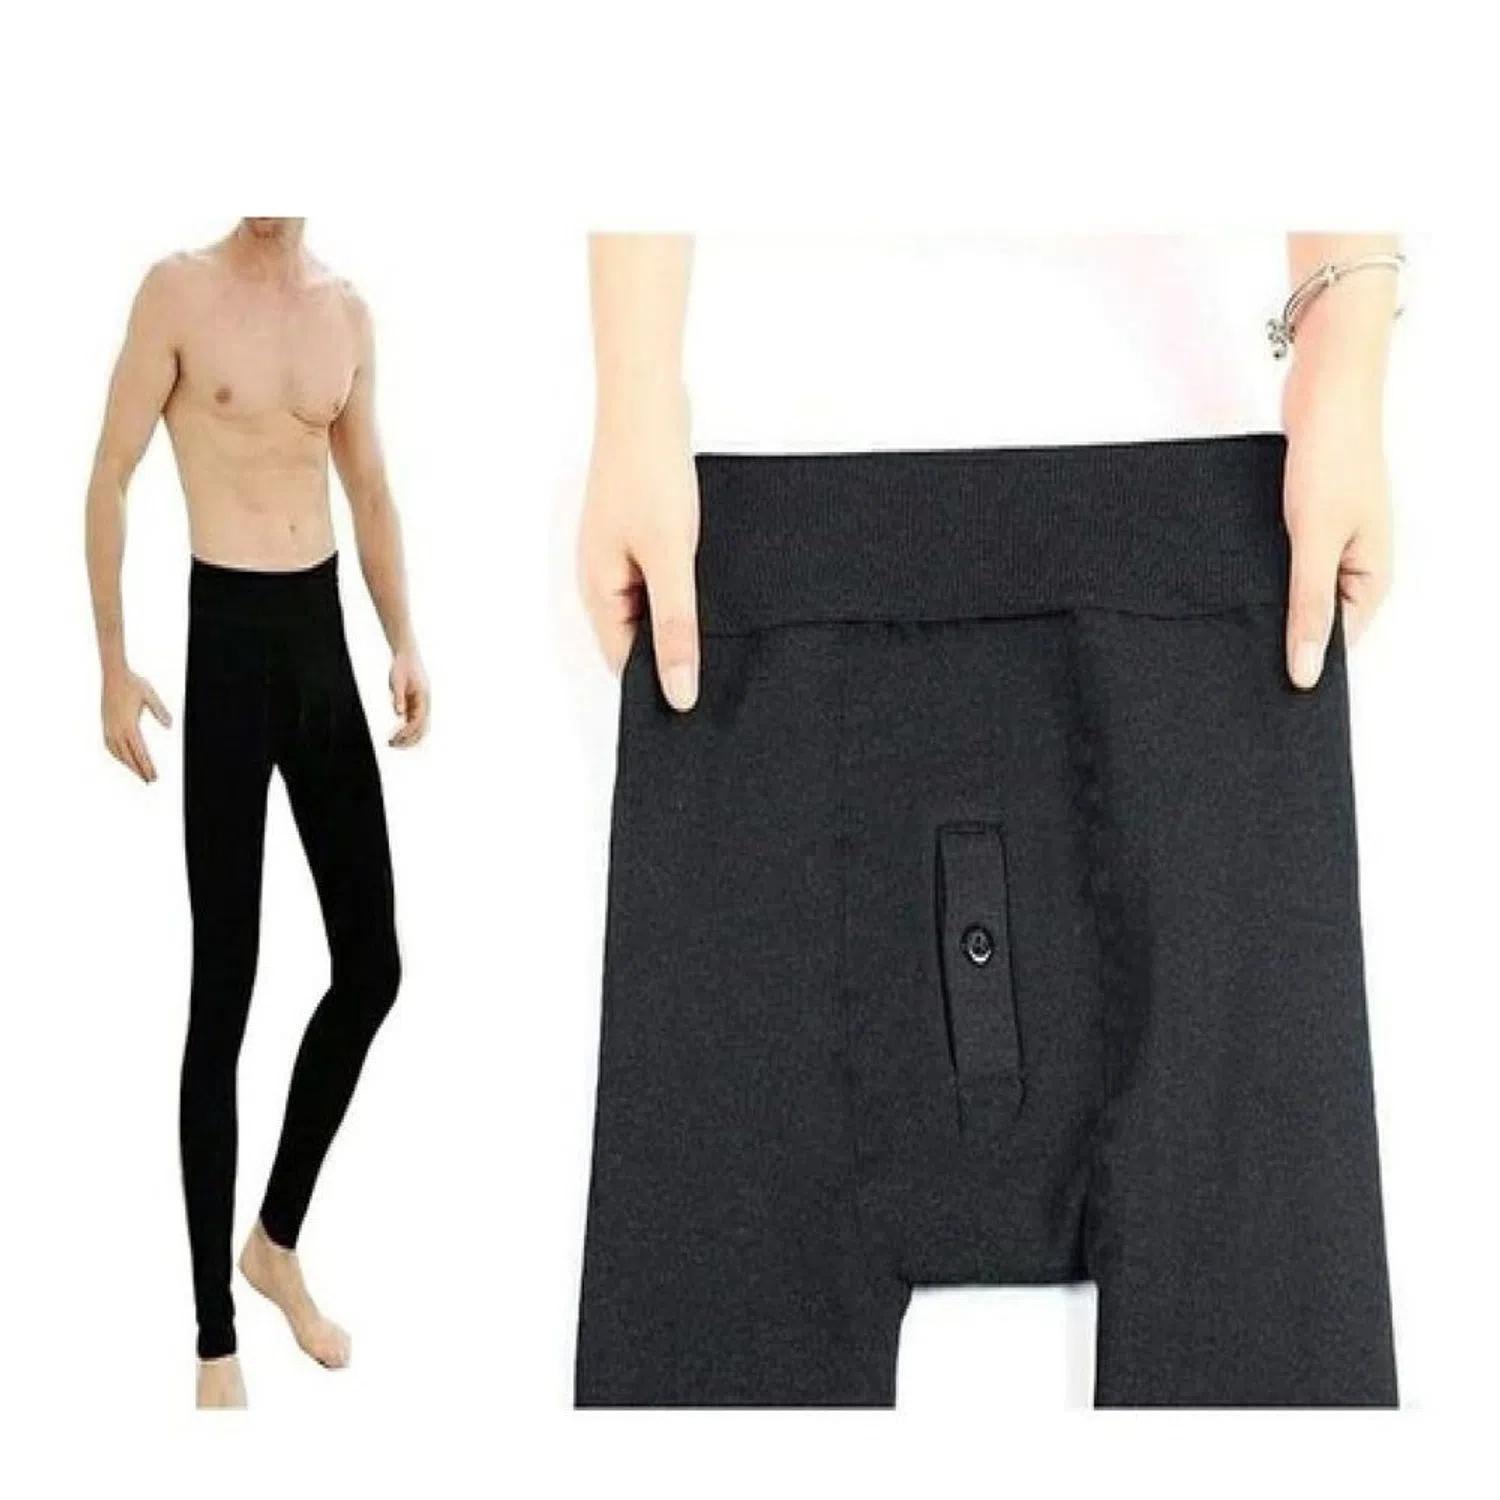 pantalones calentadores para hombres - Qué es un pantalón calentador